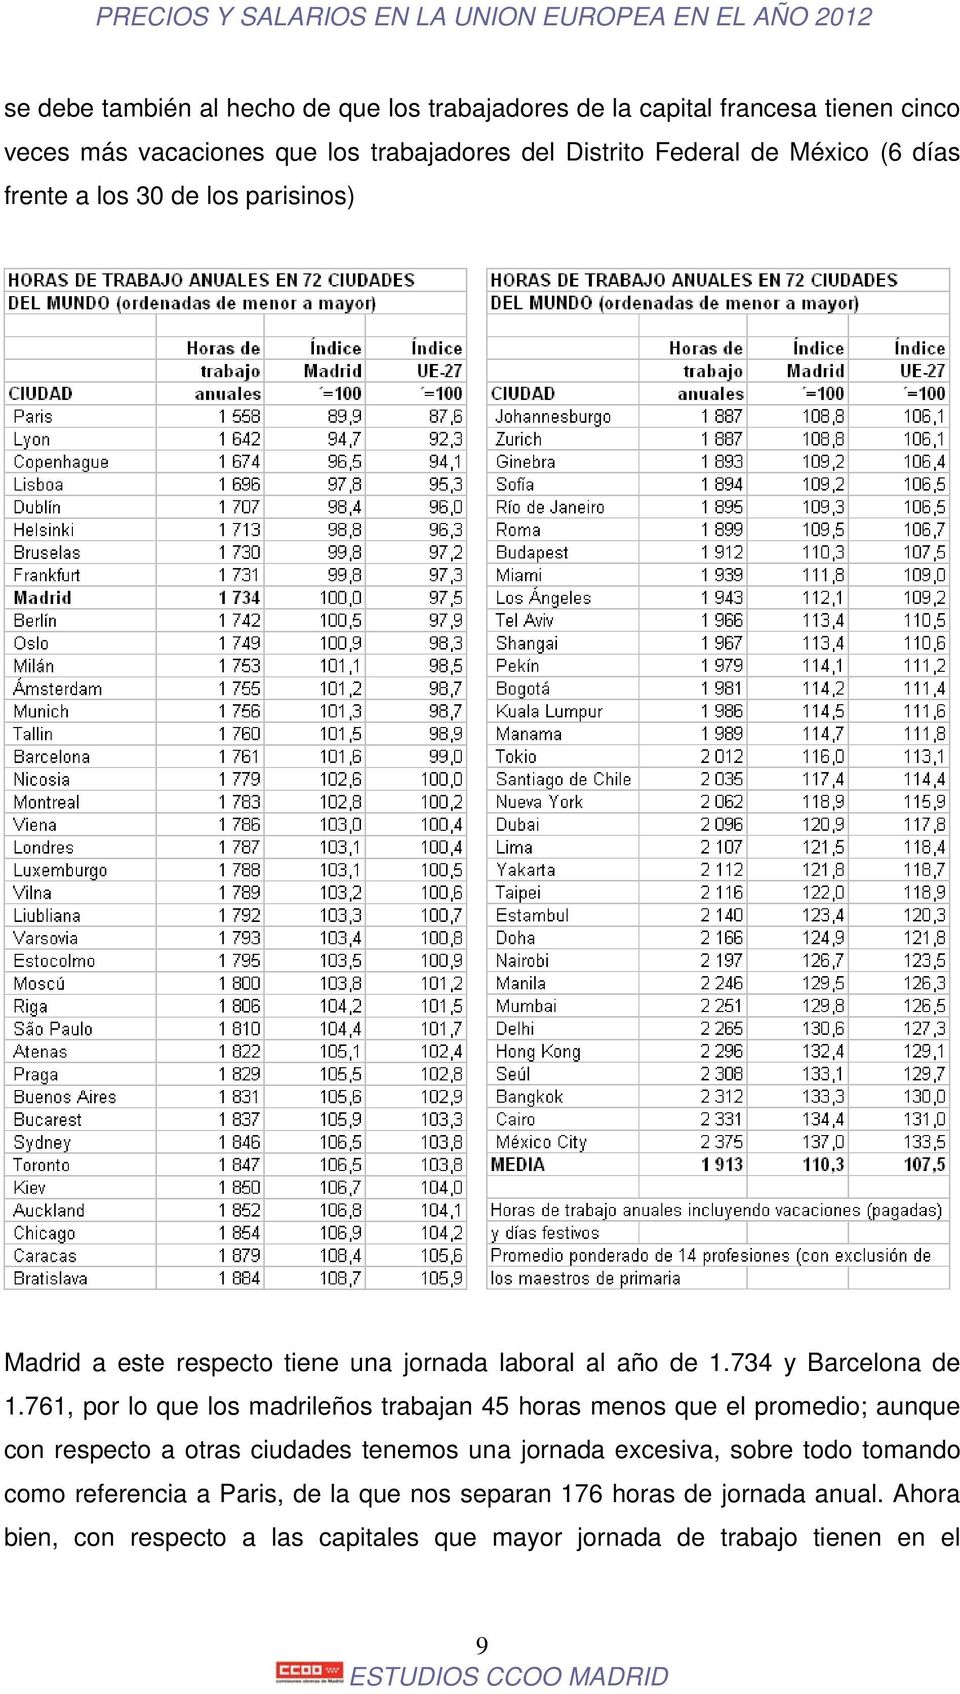 761, por lo que los madrileños trabajan 45 horas menos que el promedio; aunque con respecto a otras ciudades tenemos una jornada excesiva, sobre todo